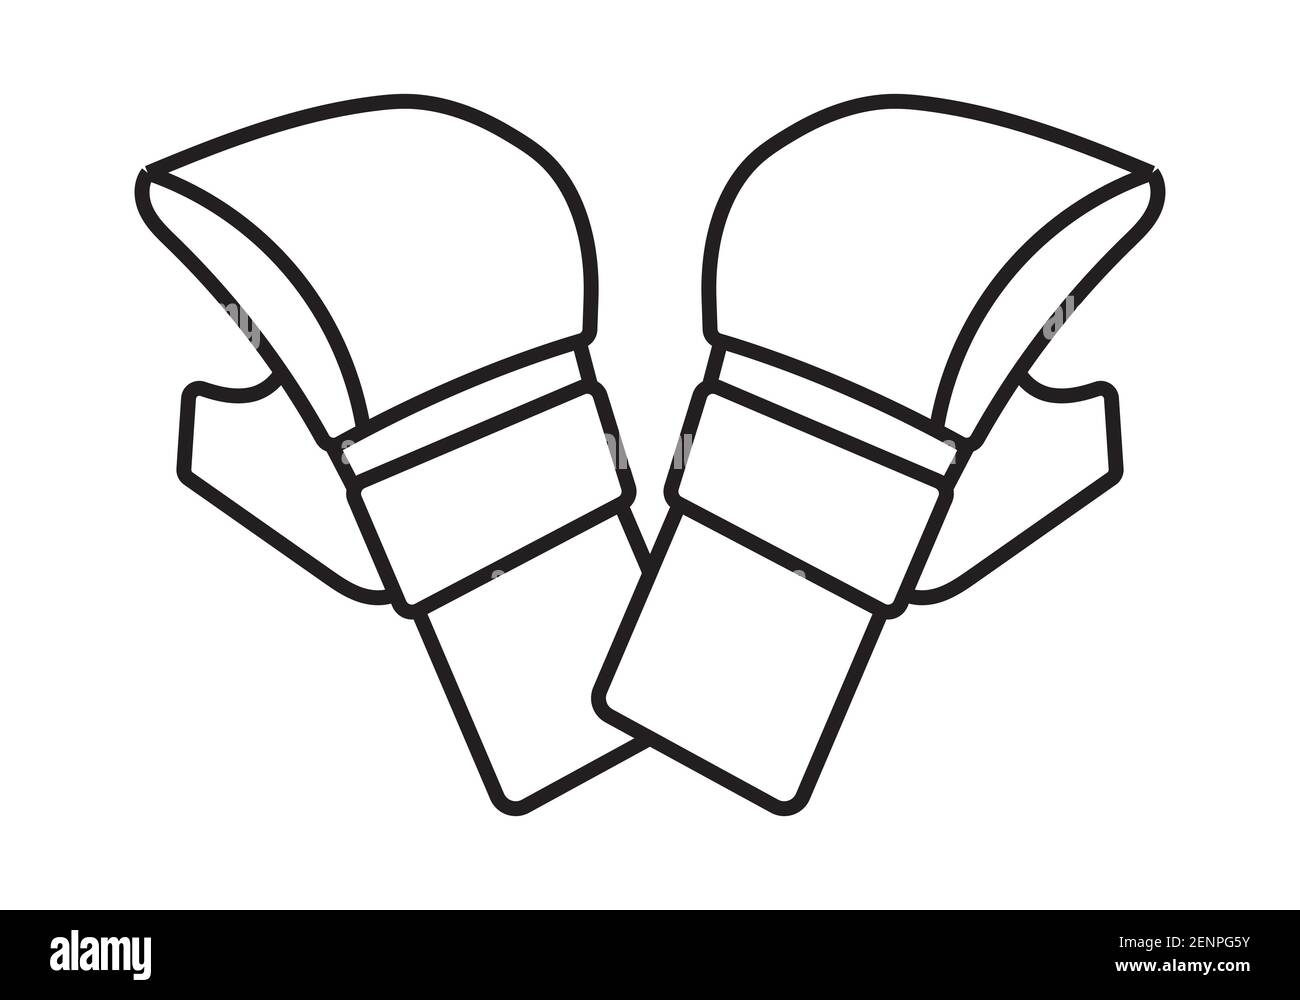 deux dessins de la gamme de gants d'arts martiaux mixtes pour applications ou site web Illustration de Vecteur